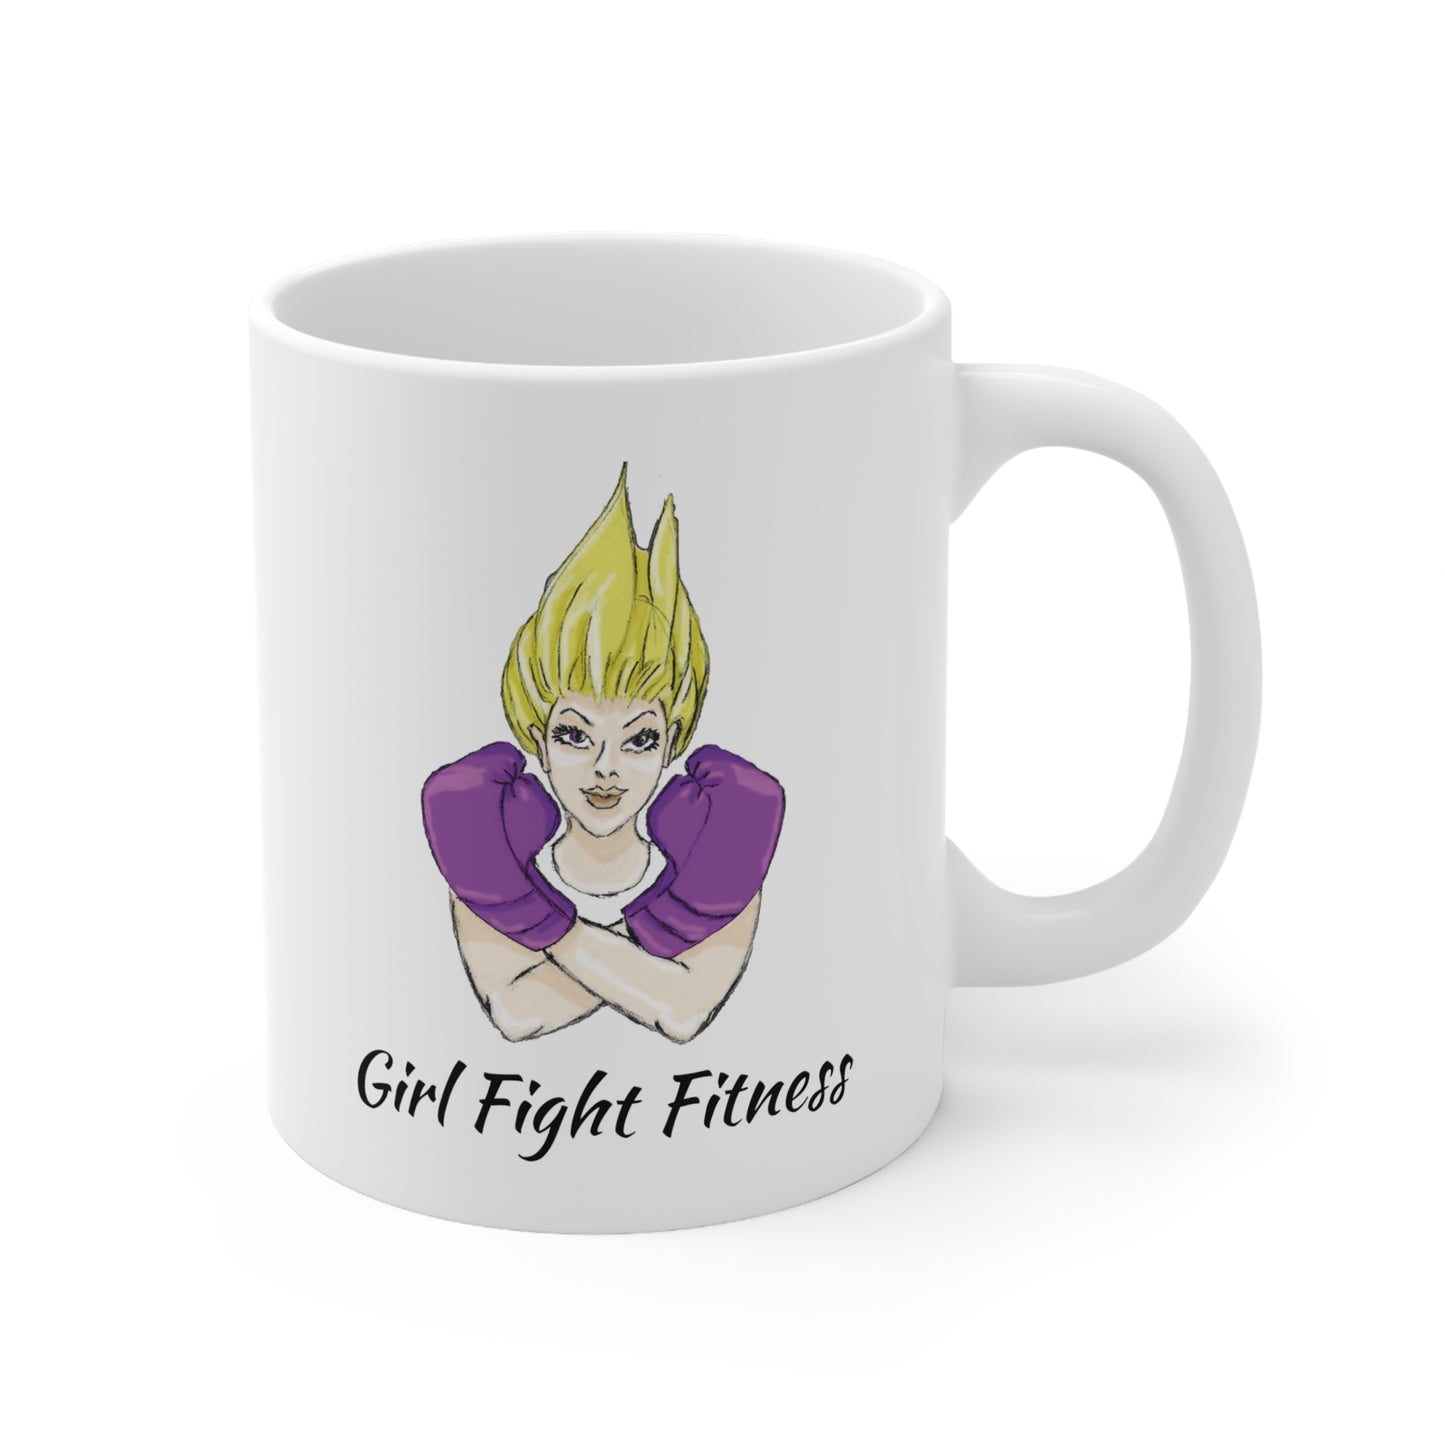 Copy of I Fight Like A Girl Ceramic Mug 11oz - White